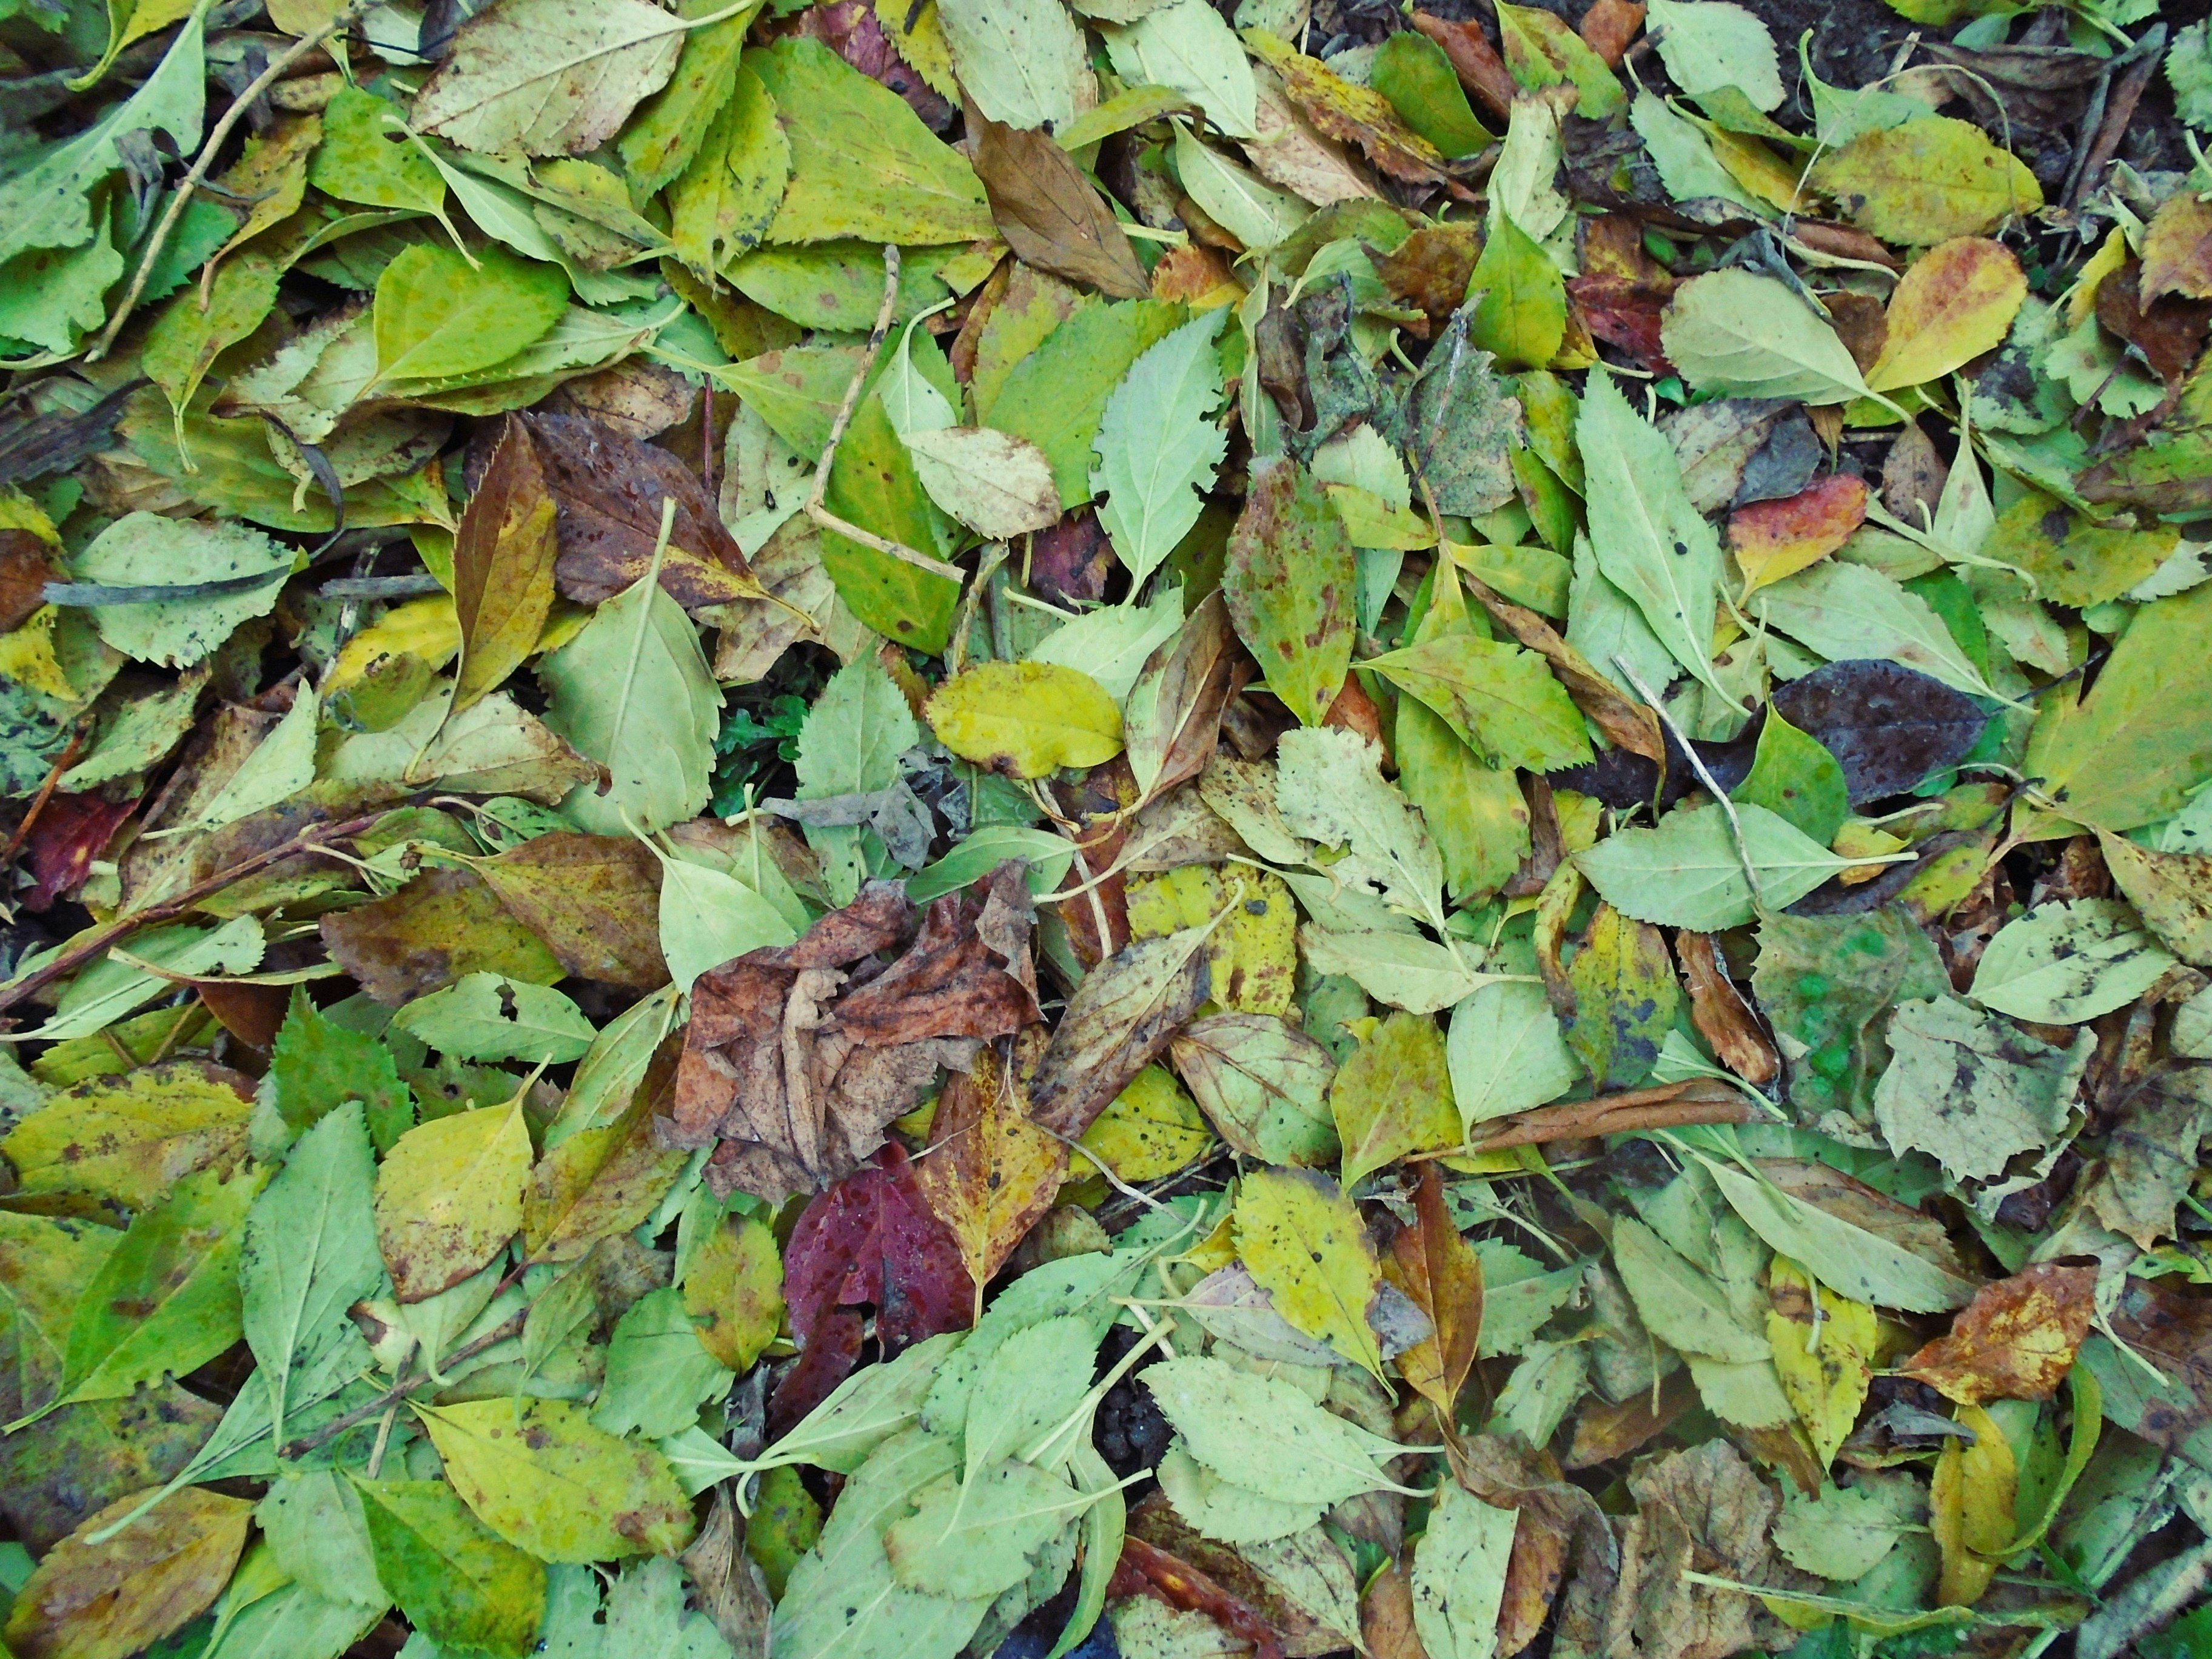 Freshly fallen leaves on ground